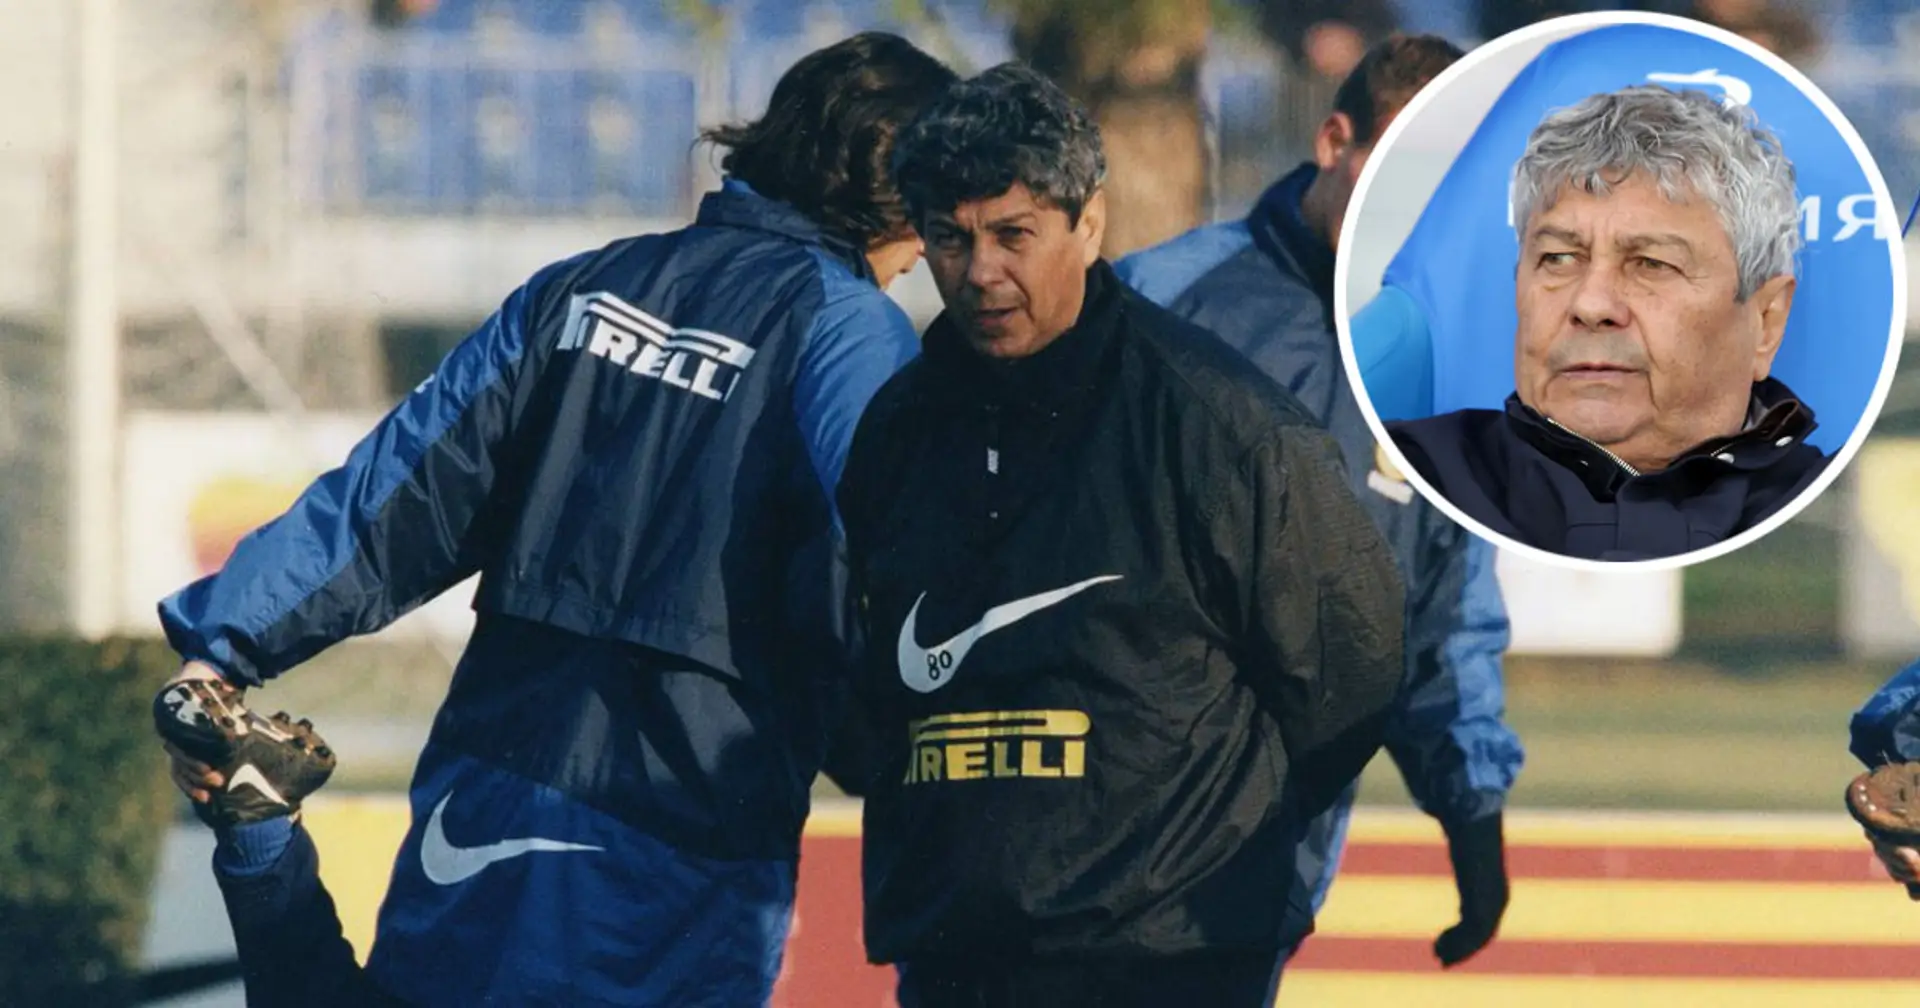 L'ex allenatore Mircea Lucescu sorprende tutti ricordando la sua Inter: "Avremmo potuto vincere la Champions League!"